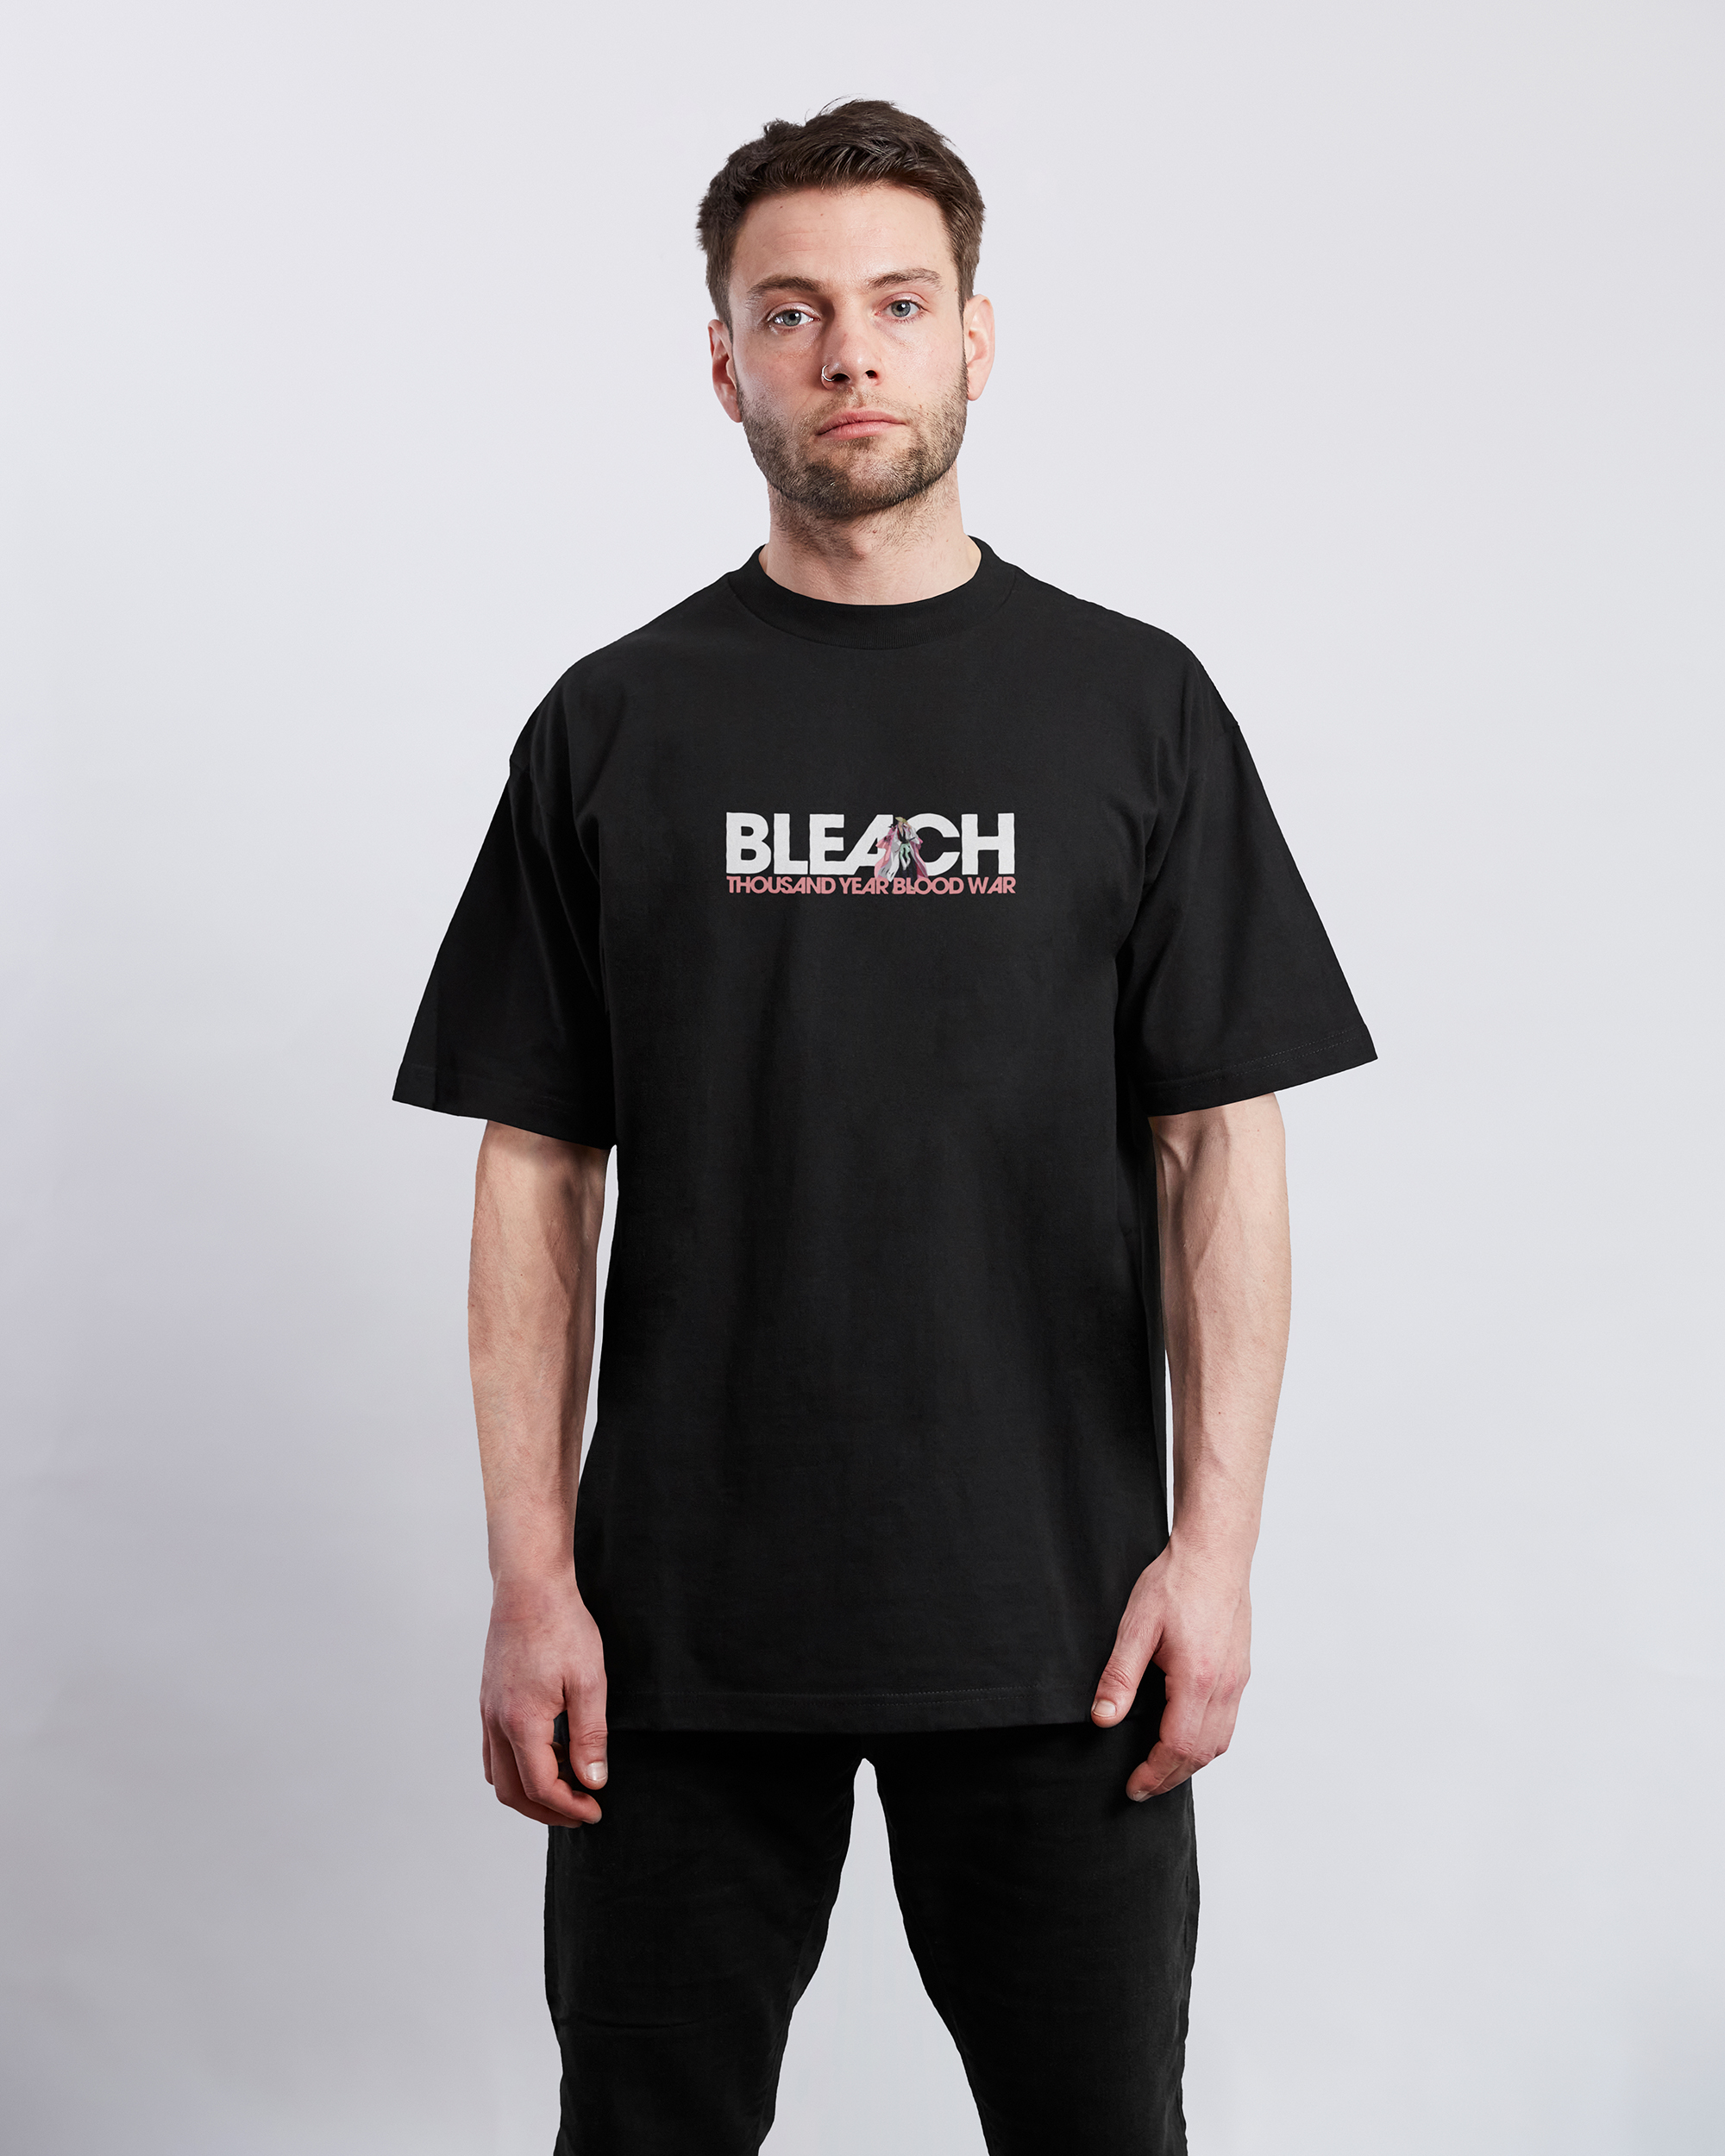 Shunsui Kyoraku Bleach   T Shirt TYBW – TheAnimeCollective